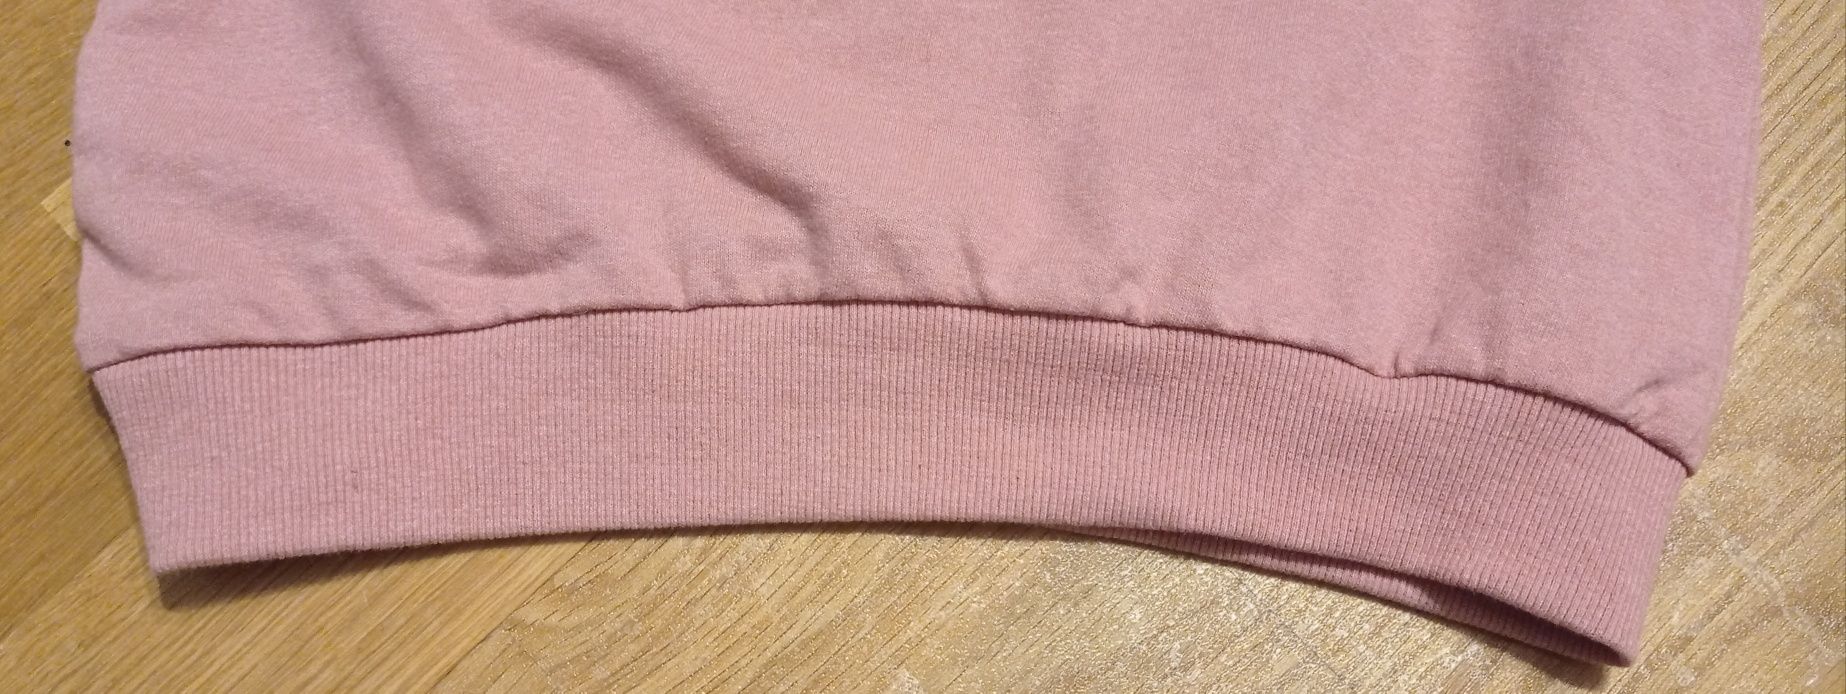 Sinsay Pink Panter Różowa Pantera krótka bluza dla dziewczynki, r. 134